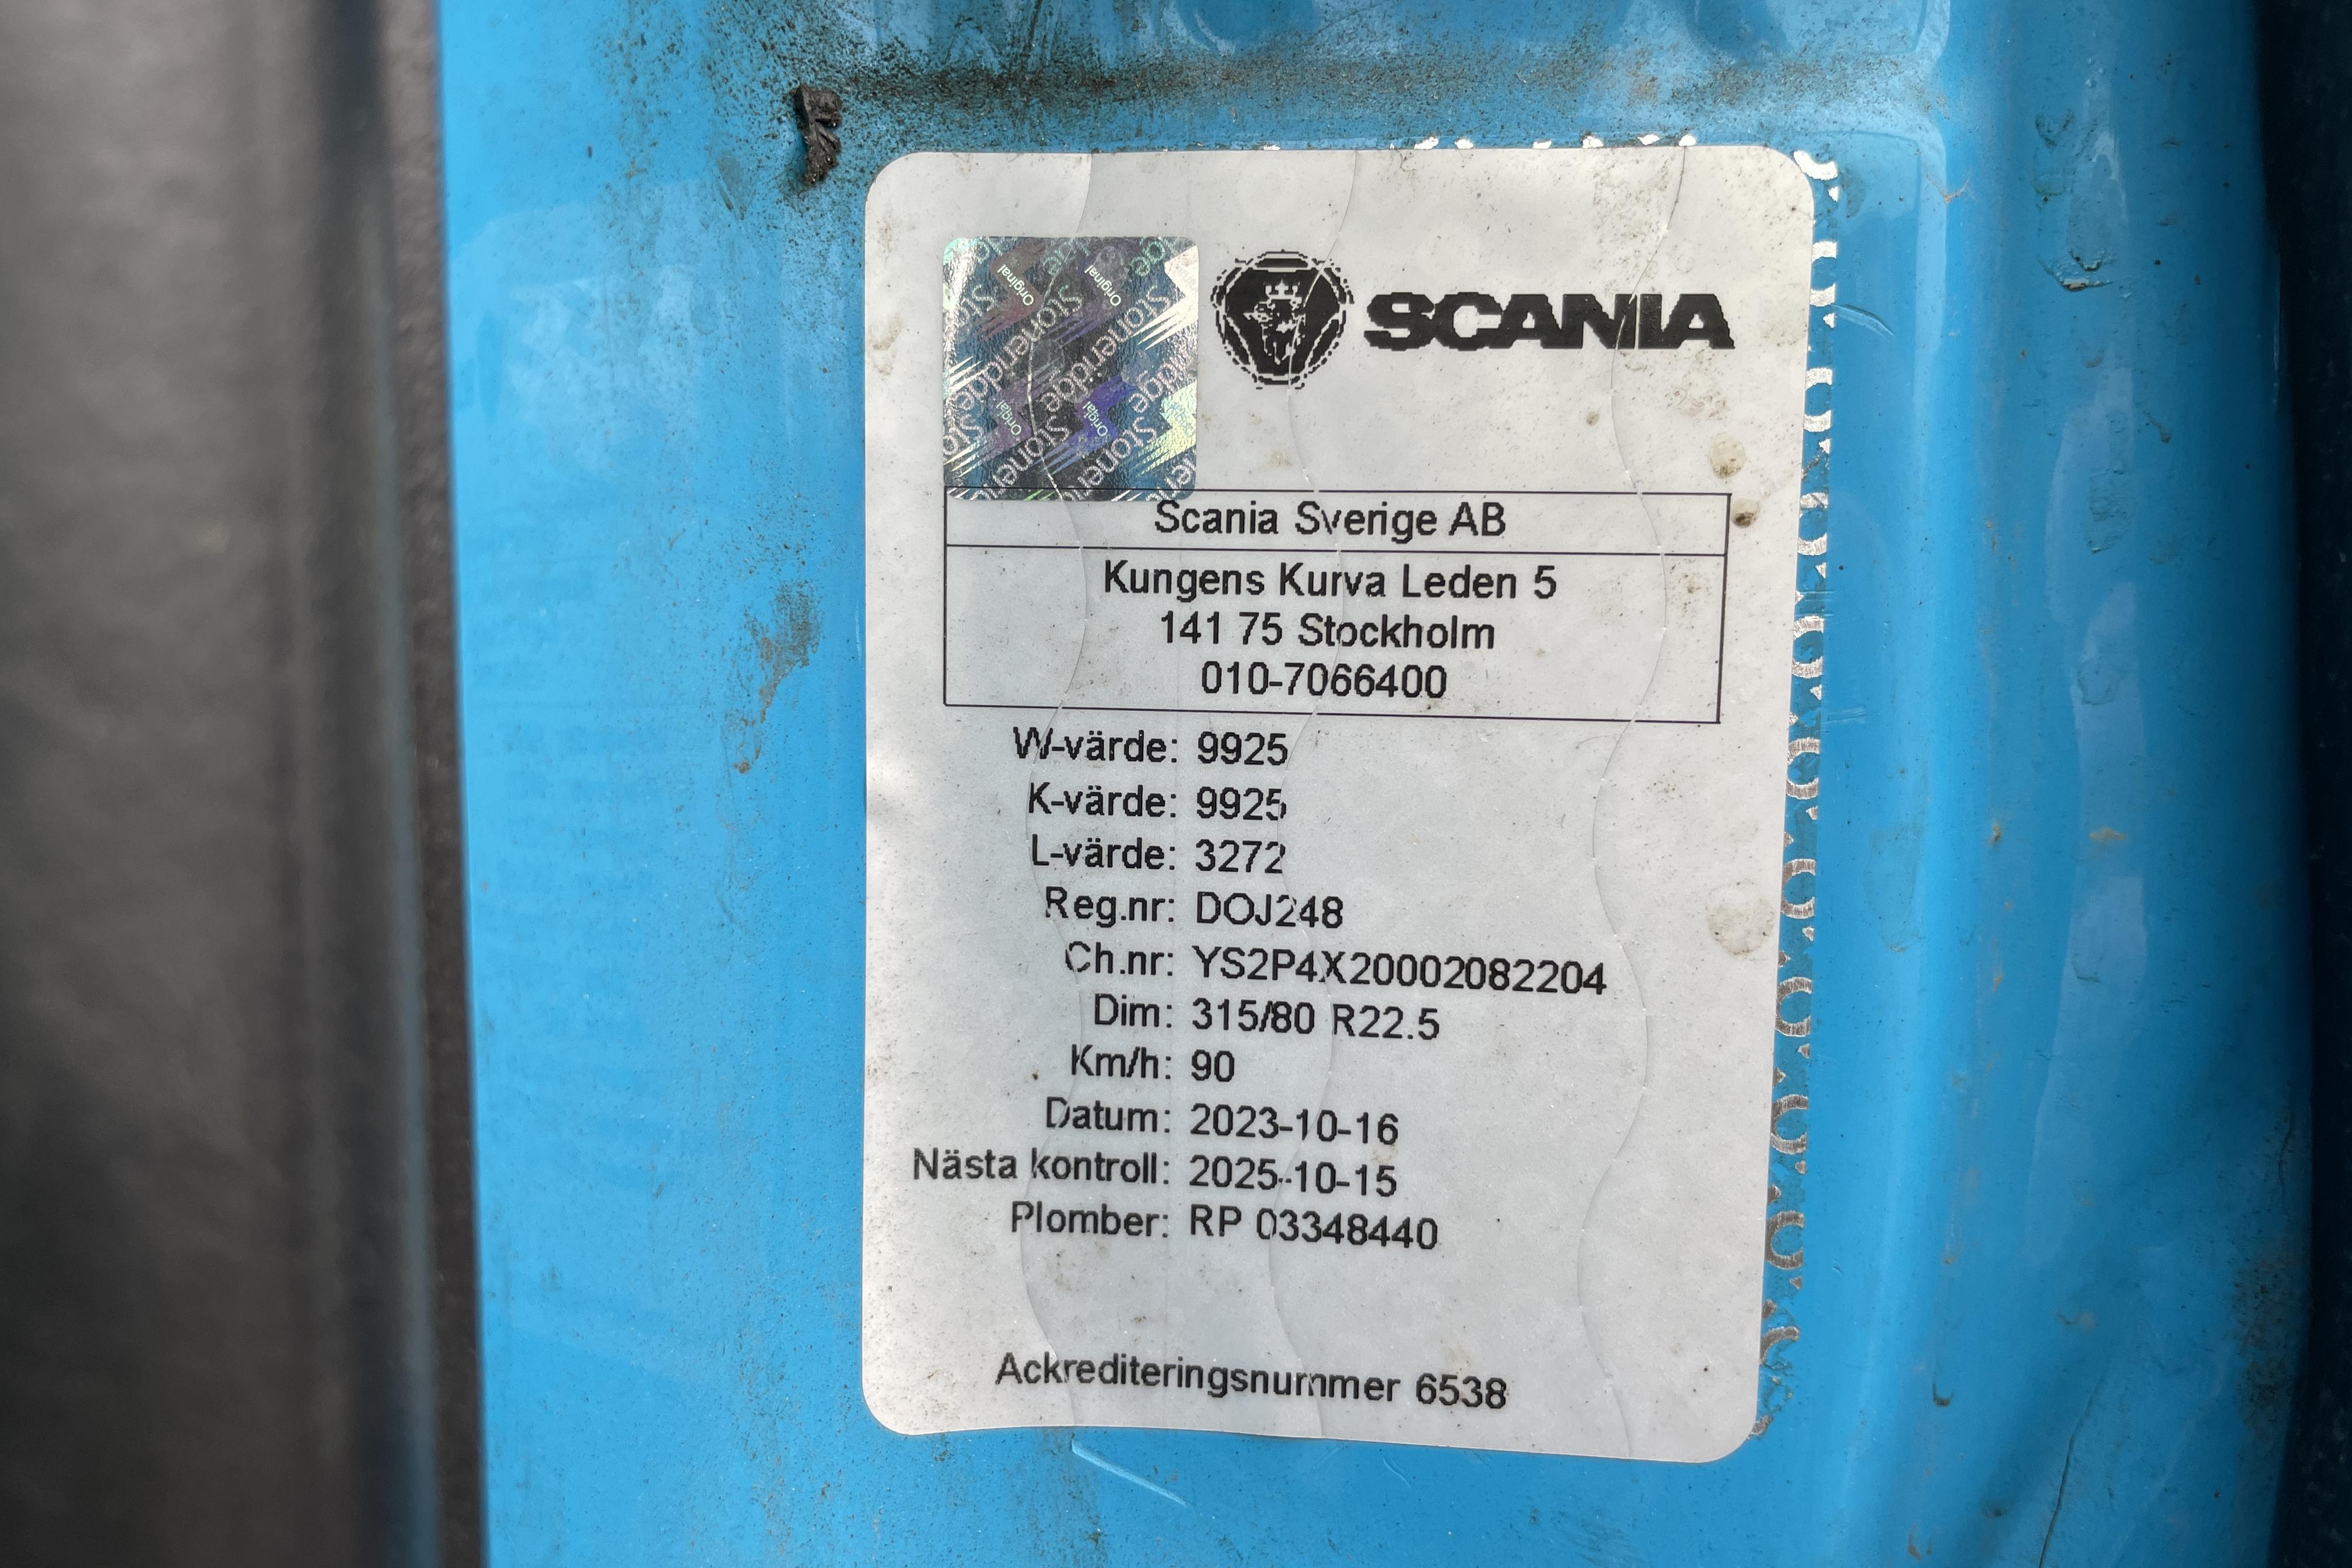 Scania P360 - 571 471 km - Automatyczna - niebieski - 2013